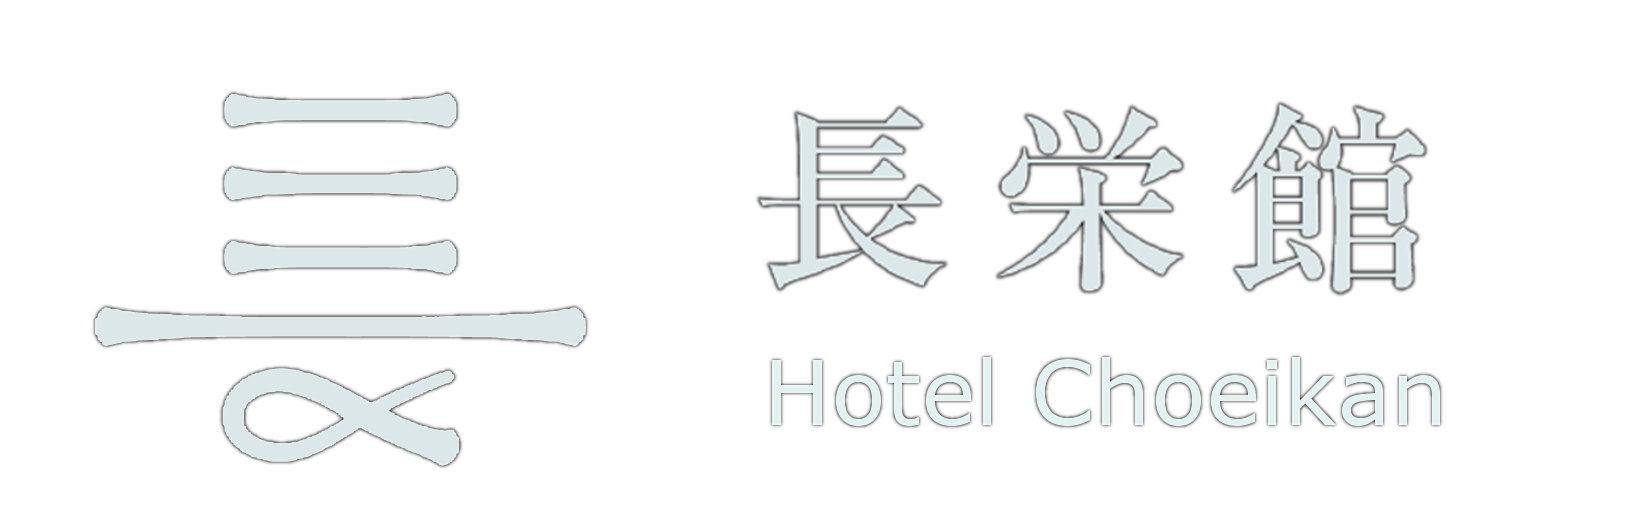 クチコミ 公式サイト 鴬宿温泉 長栄館 雫石町の旅館